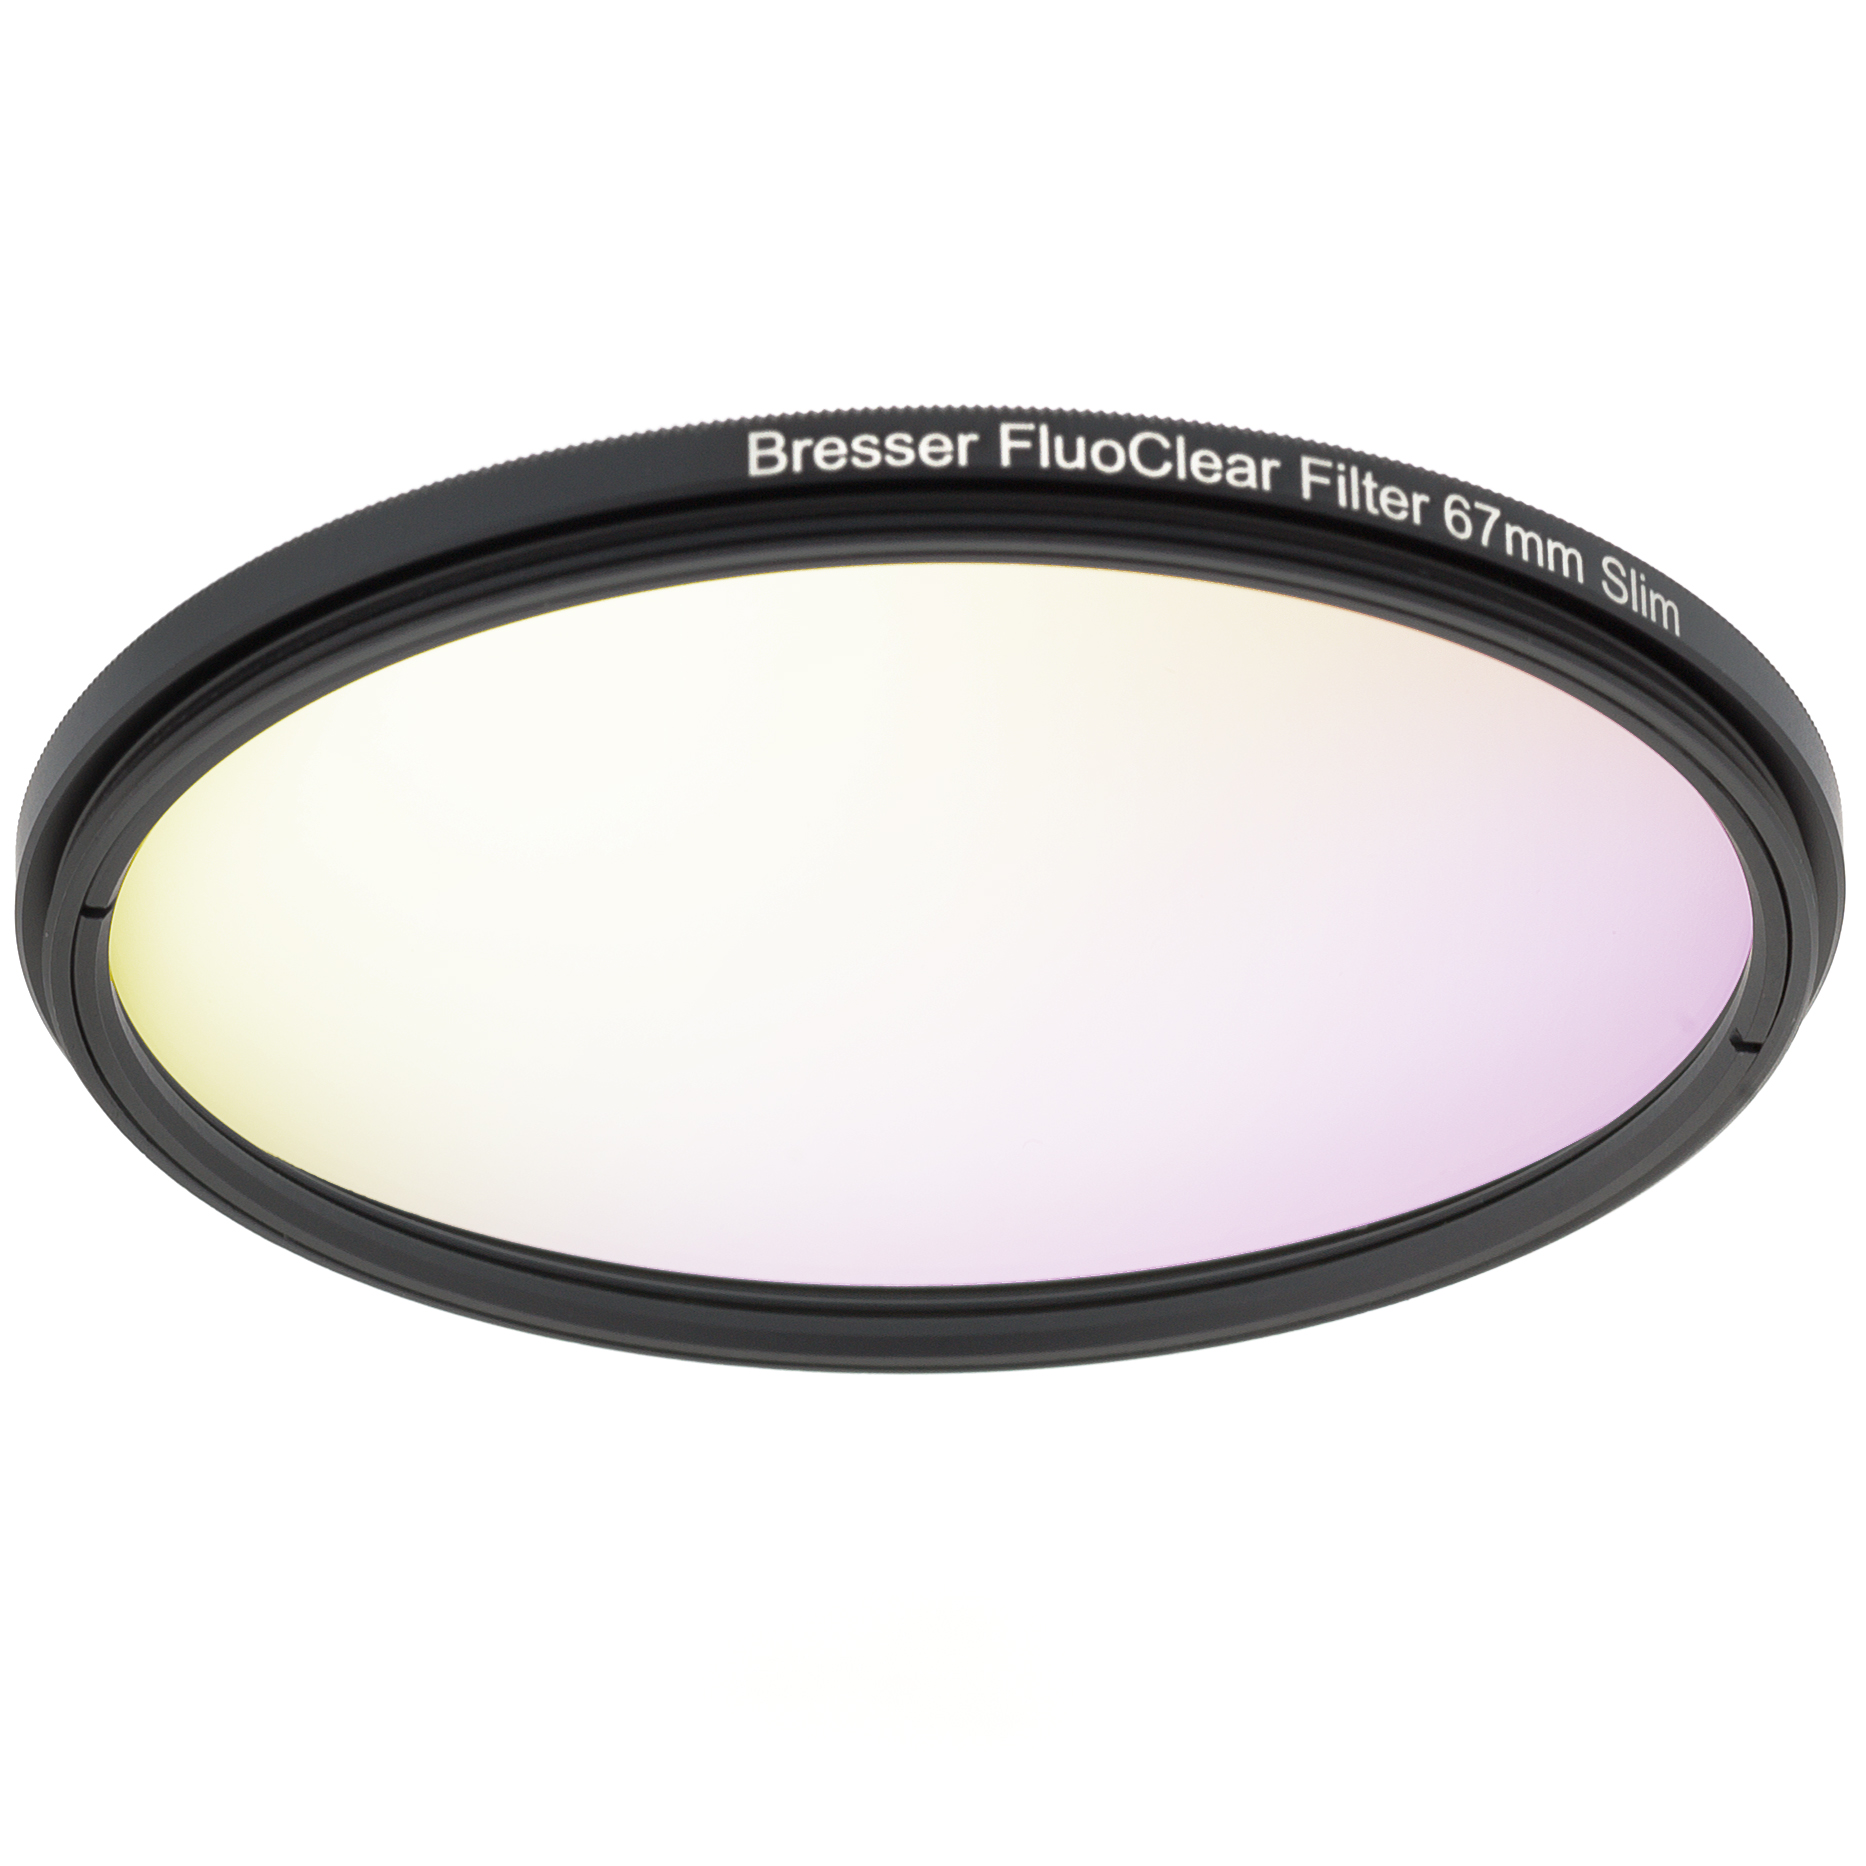 BRESSER FluoClear Filter für Fluoreszenz 67mm Slim